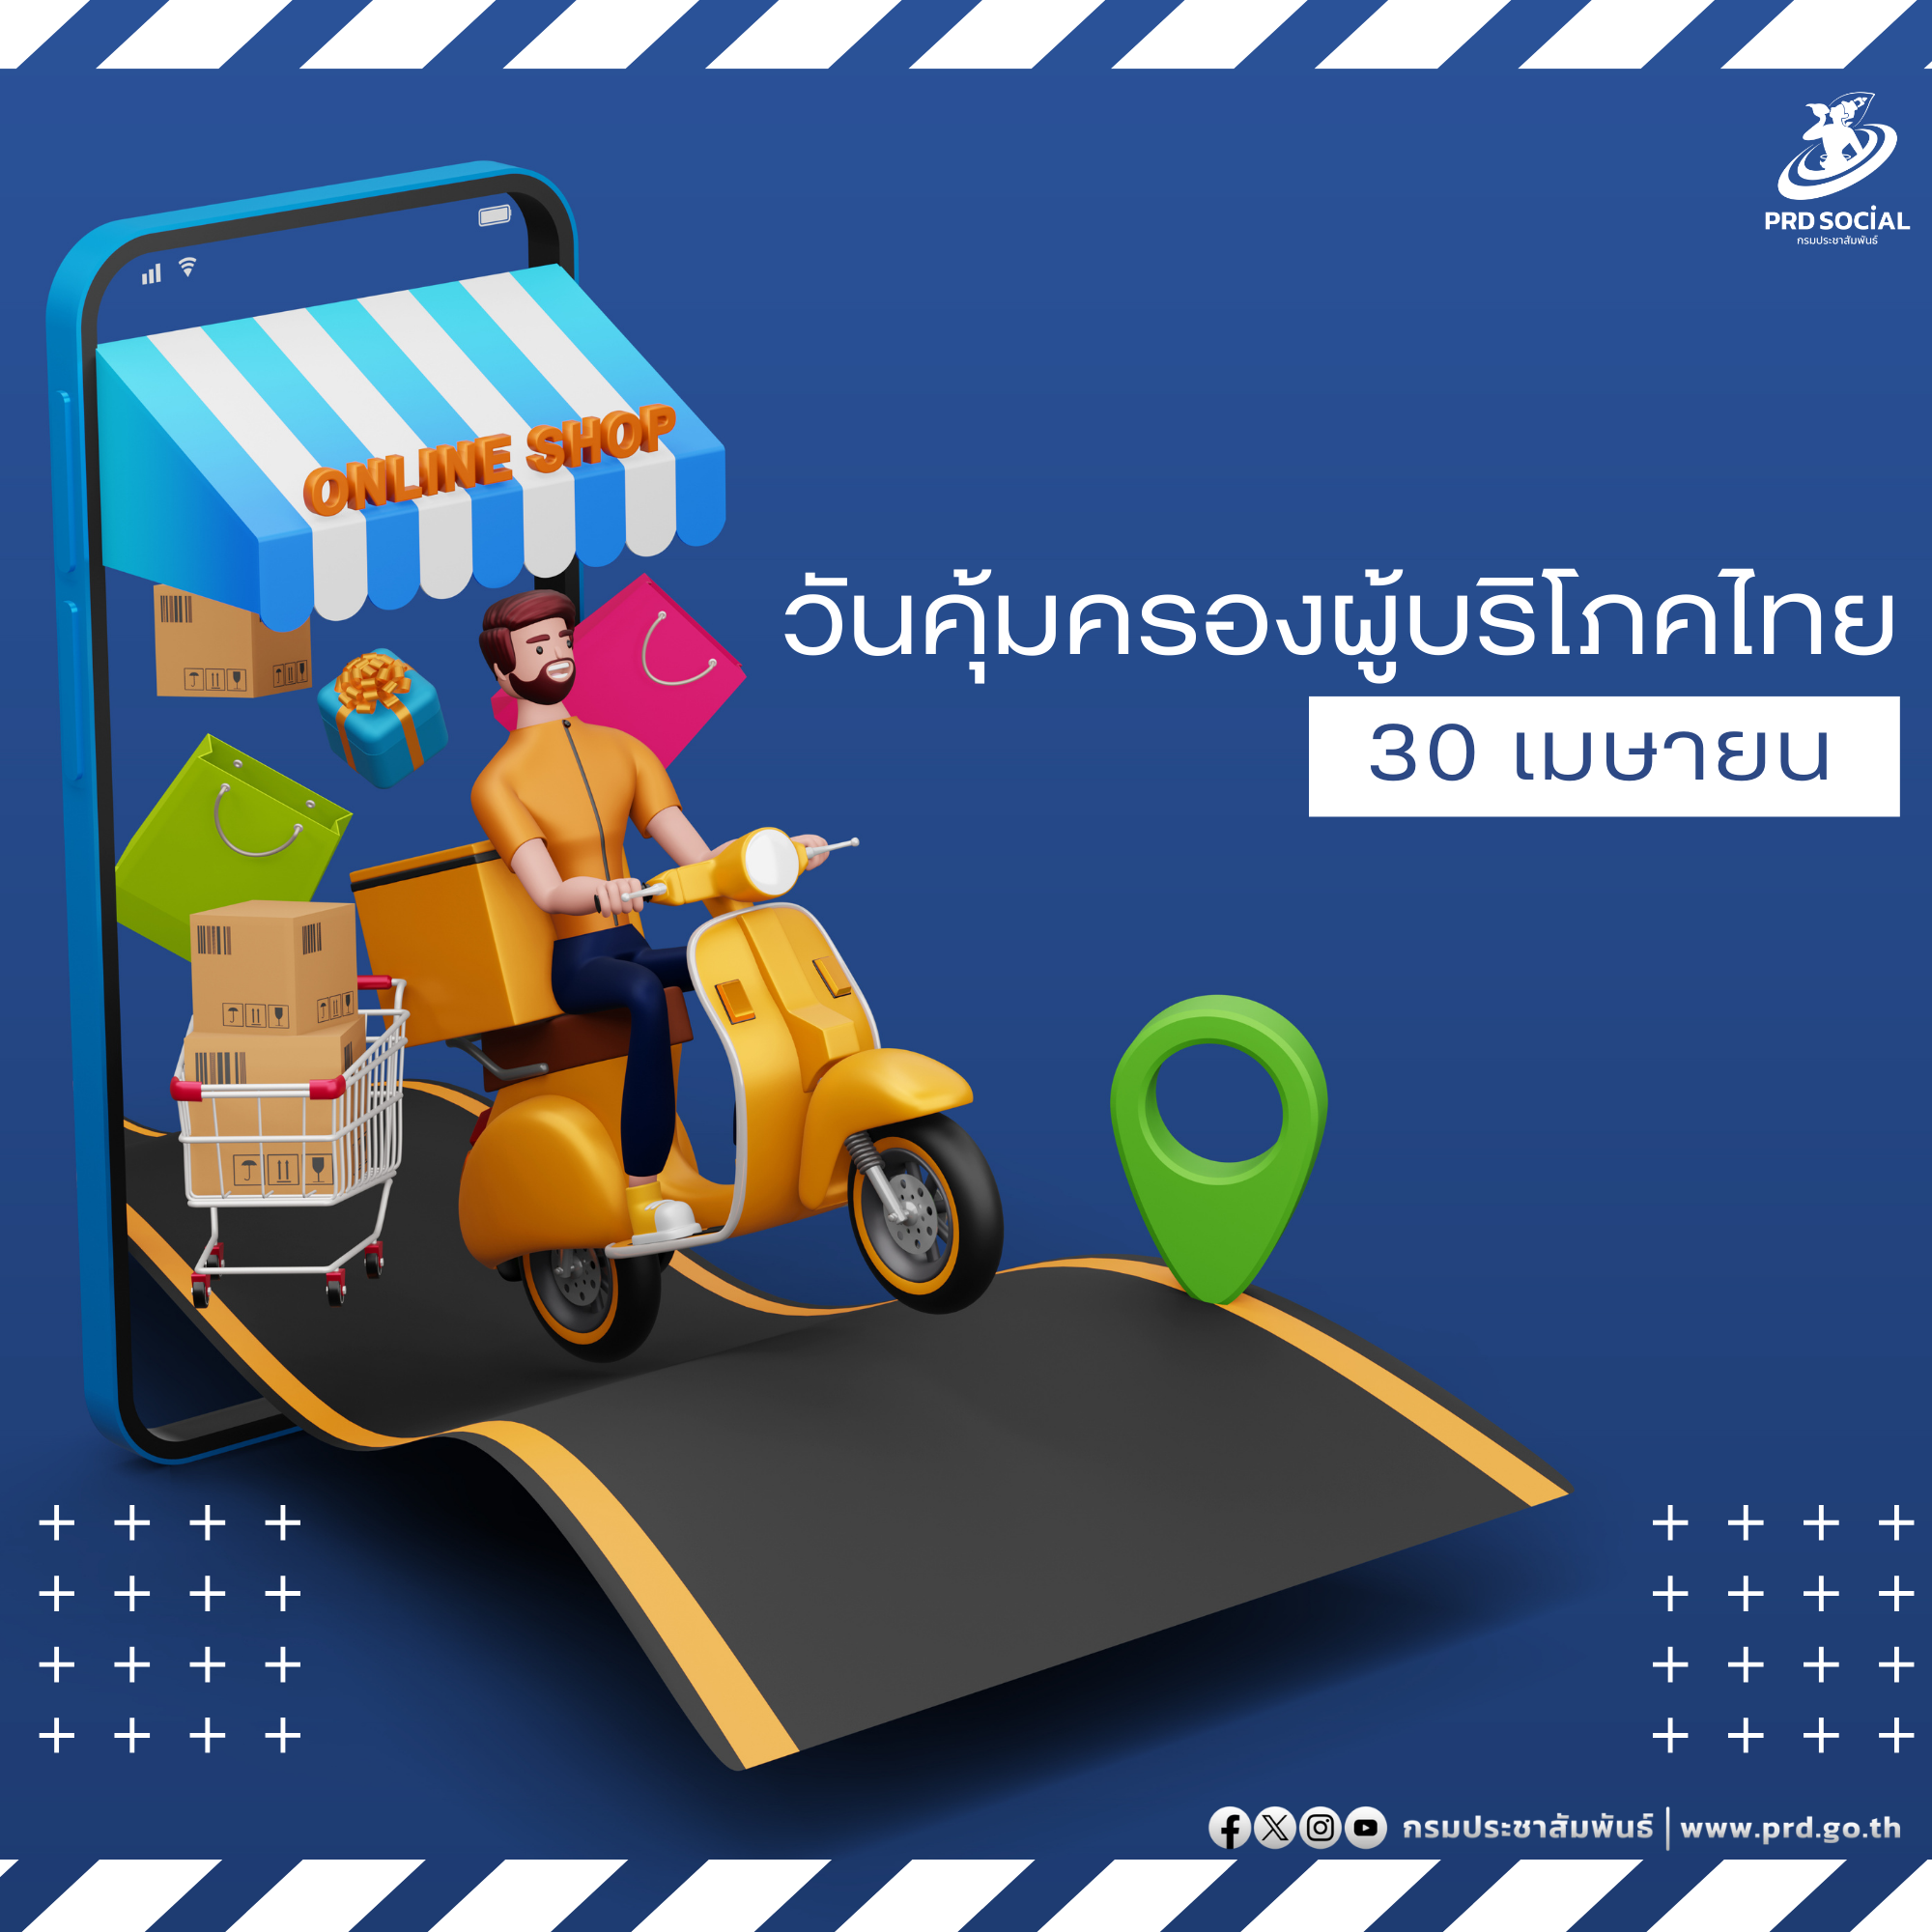 30 เมษายน วันคุ้มครองผู้บริโภคไทย : สิทธิผู้บริโภคไทยต้องได้รับความคุ้มครอง